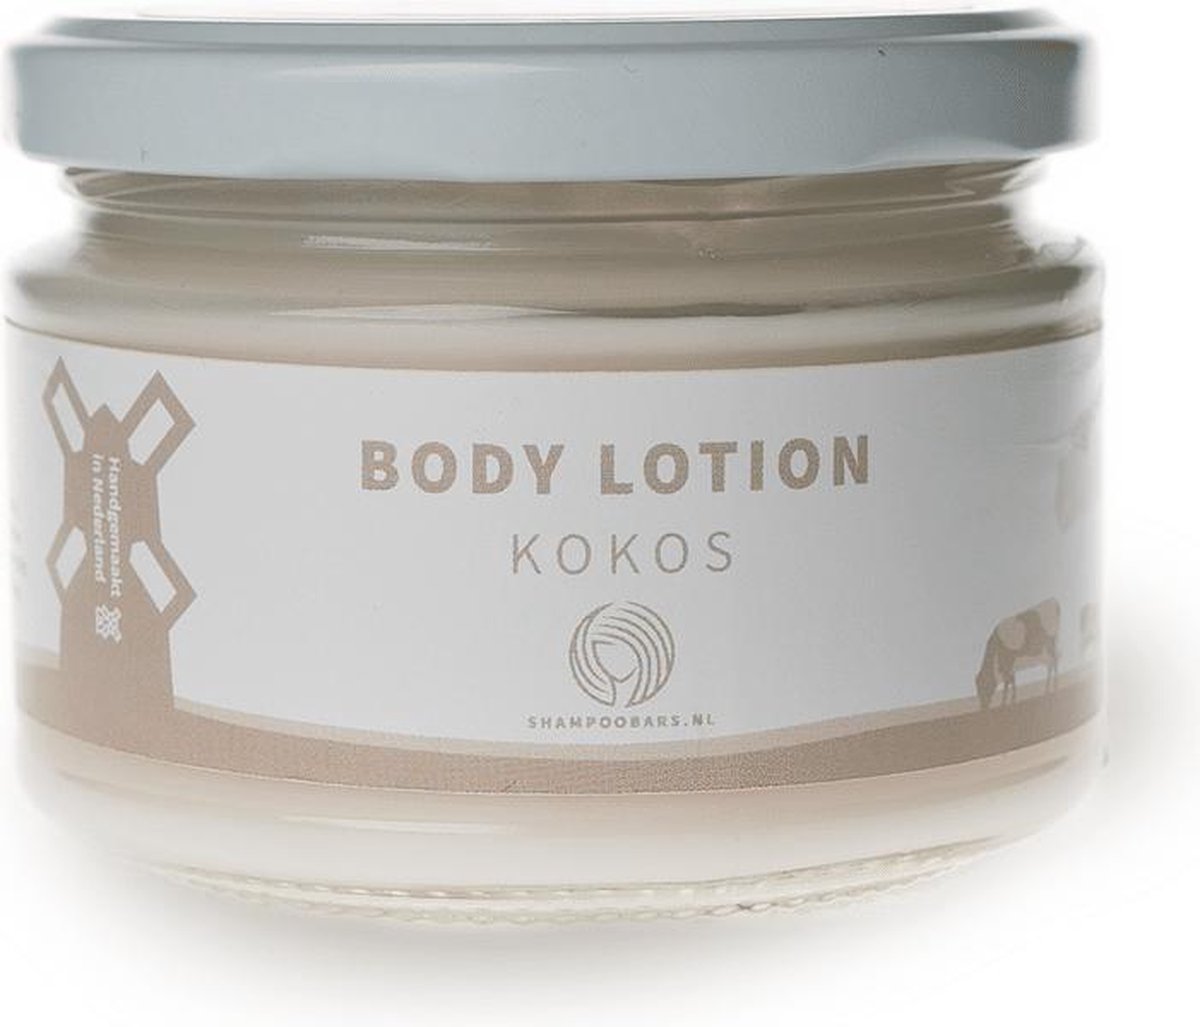 Shampoo Bars - Body Lotion - Kokos